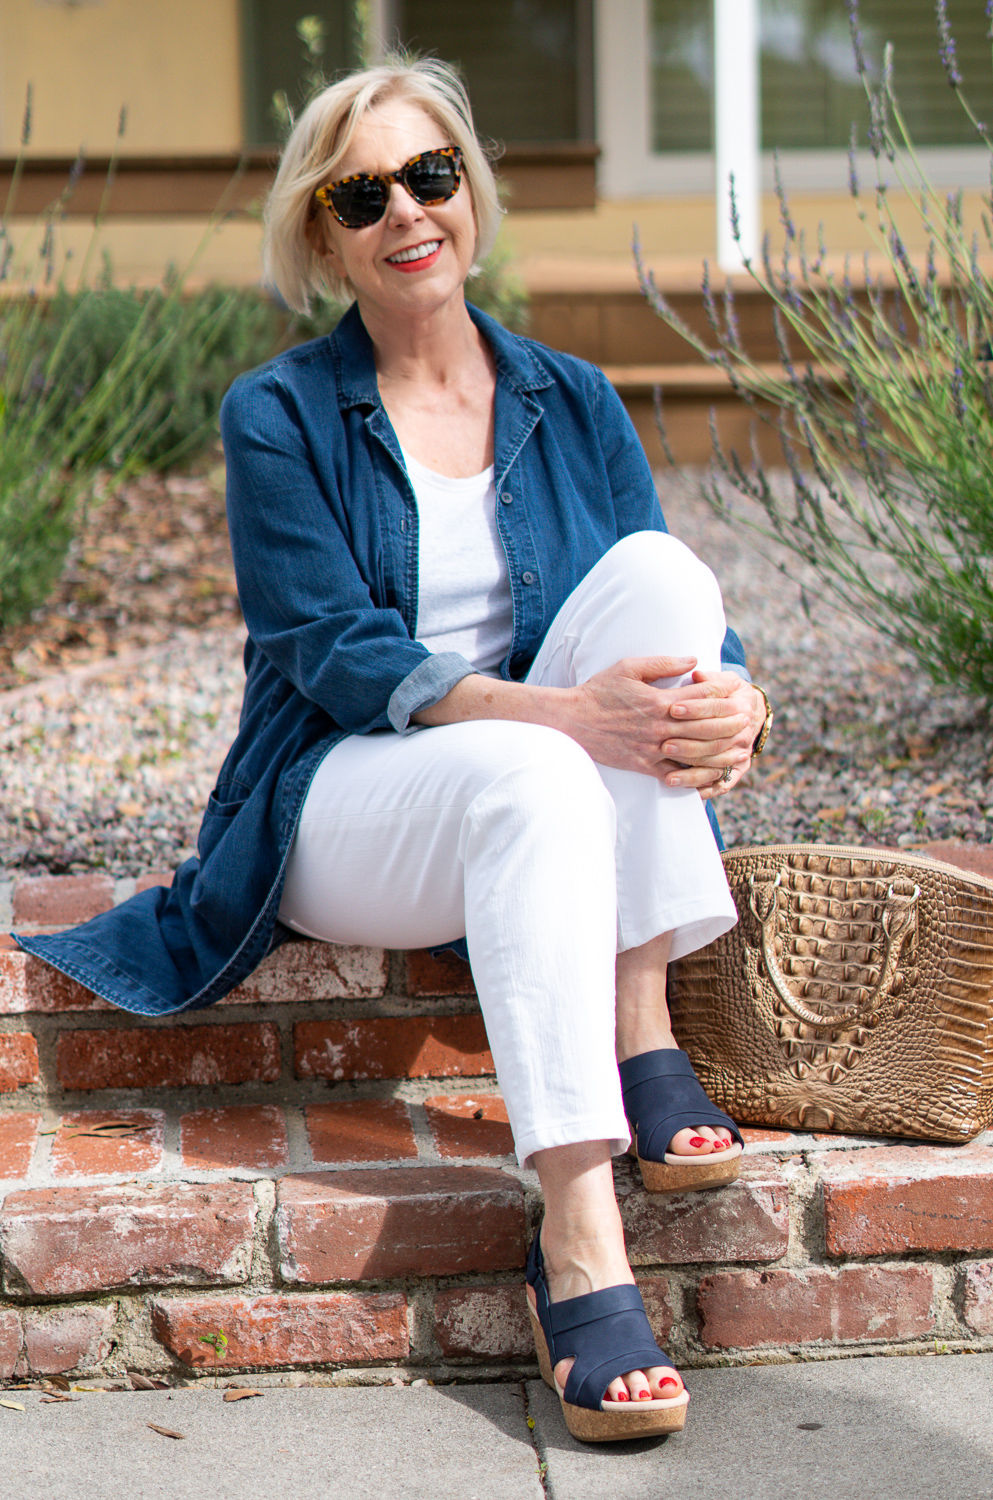 Susan B of une femme d'un certain age wears a casual brunch look with blue Clark's platform sandals.